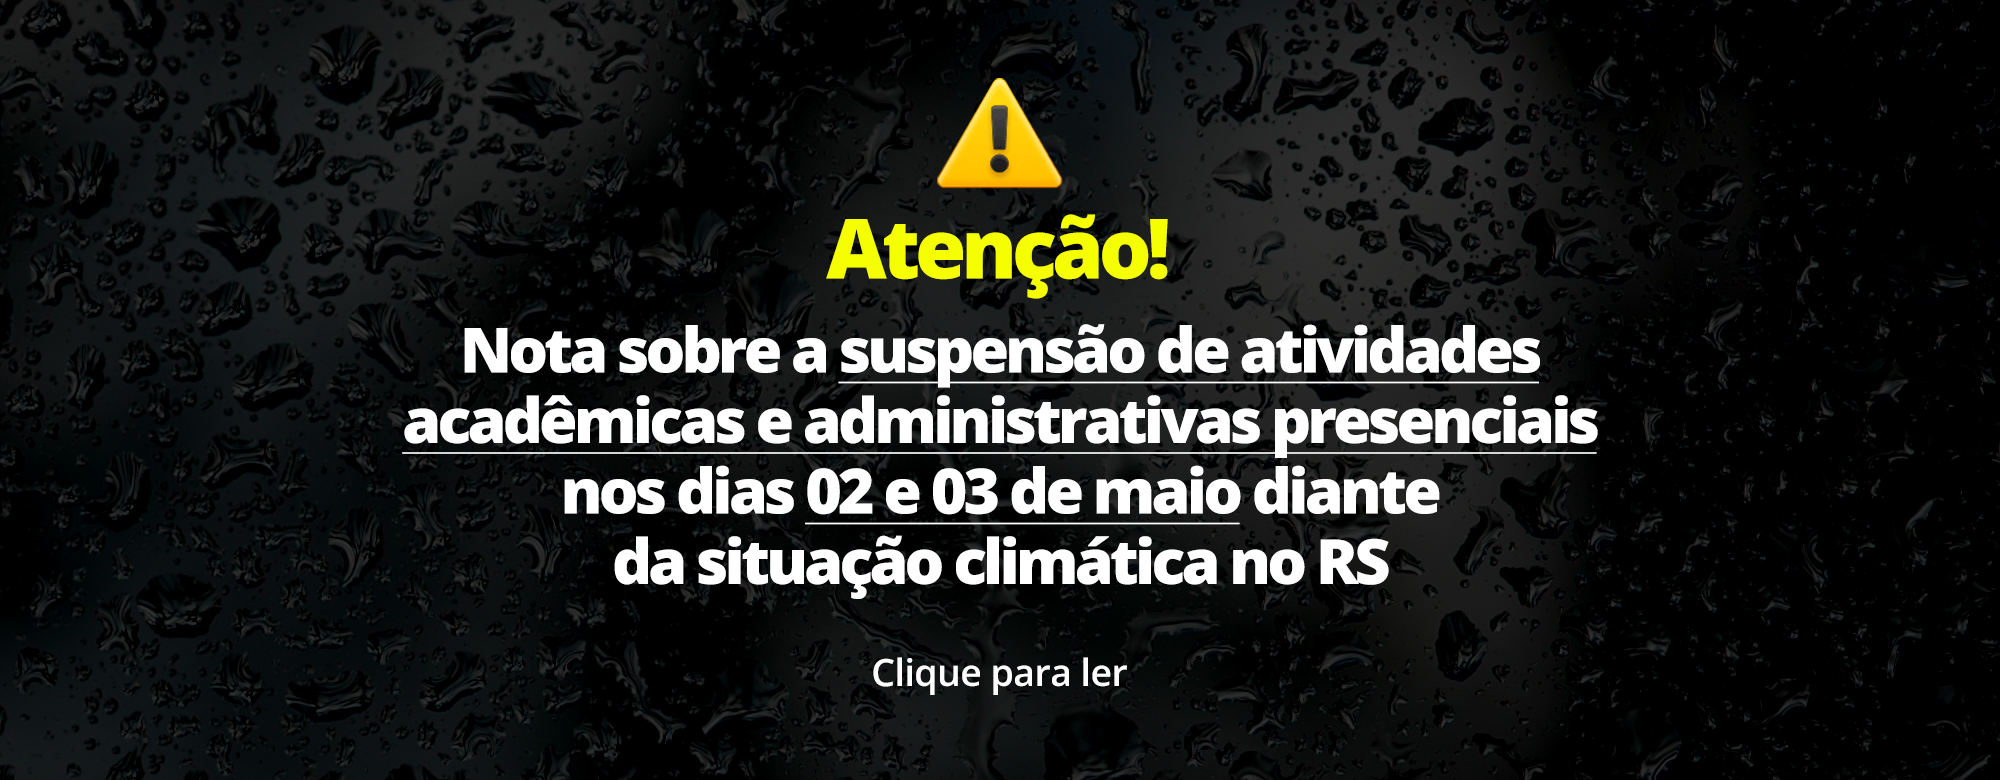 Unipampa anuncia suspensão de atividades acadêmicas e administrativas presenciais em razão da situação climática no RS